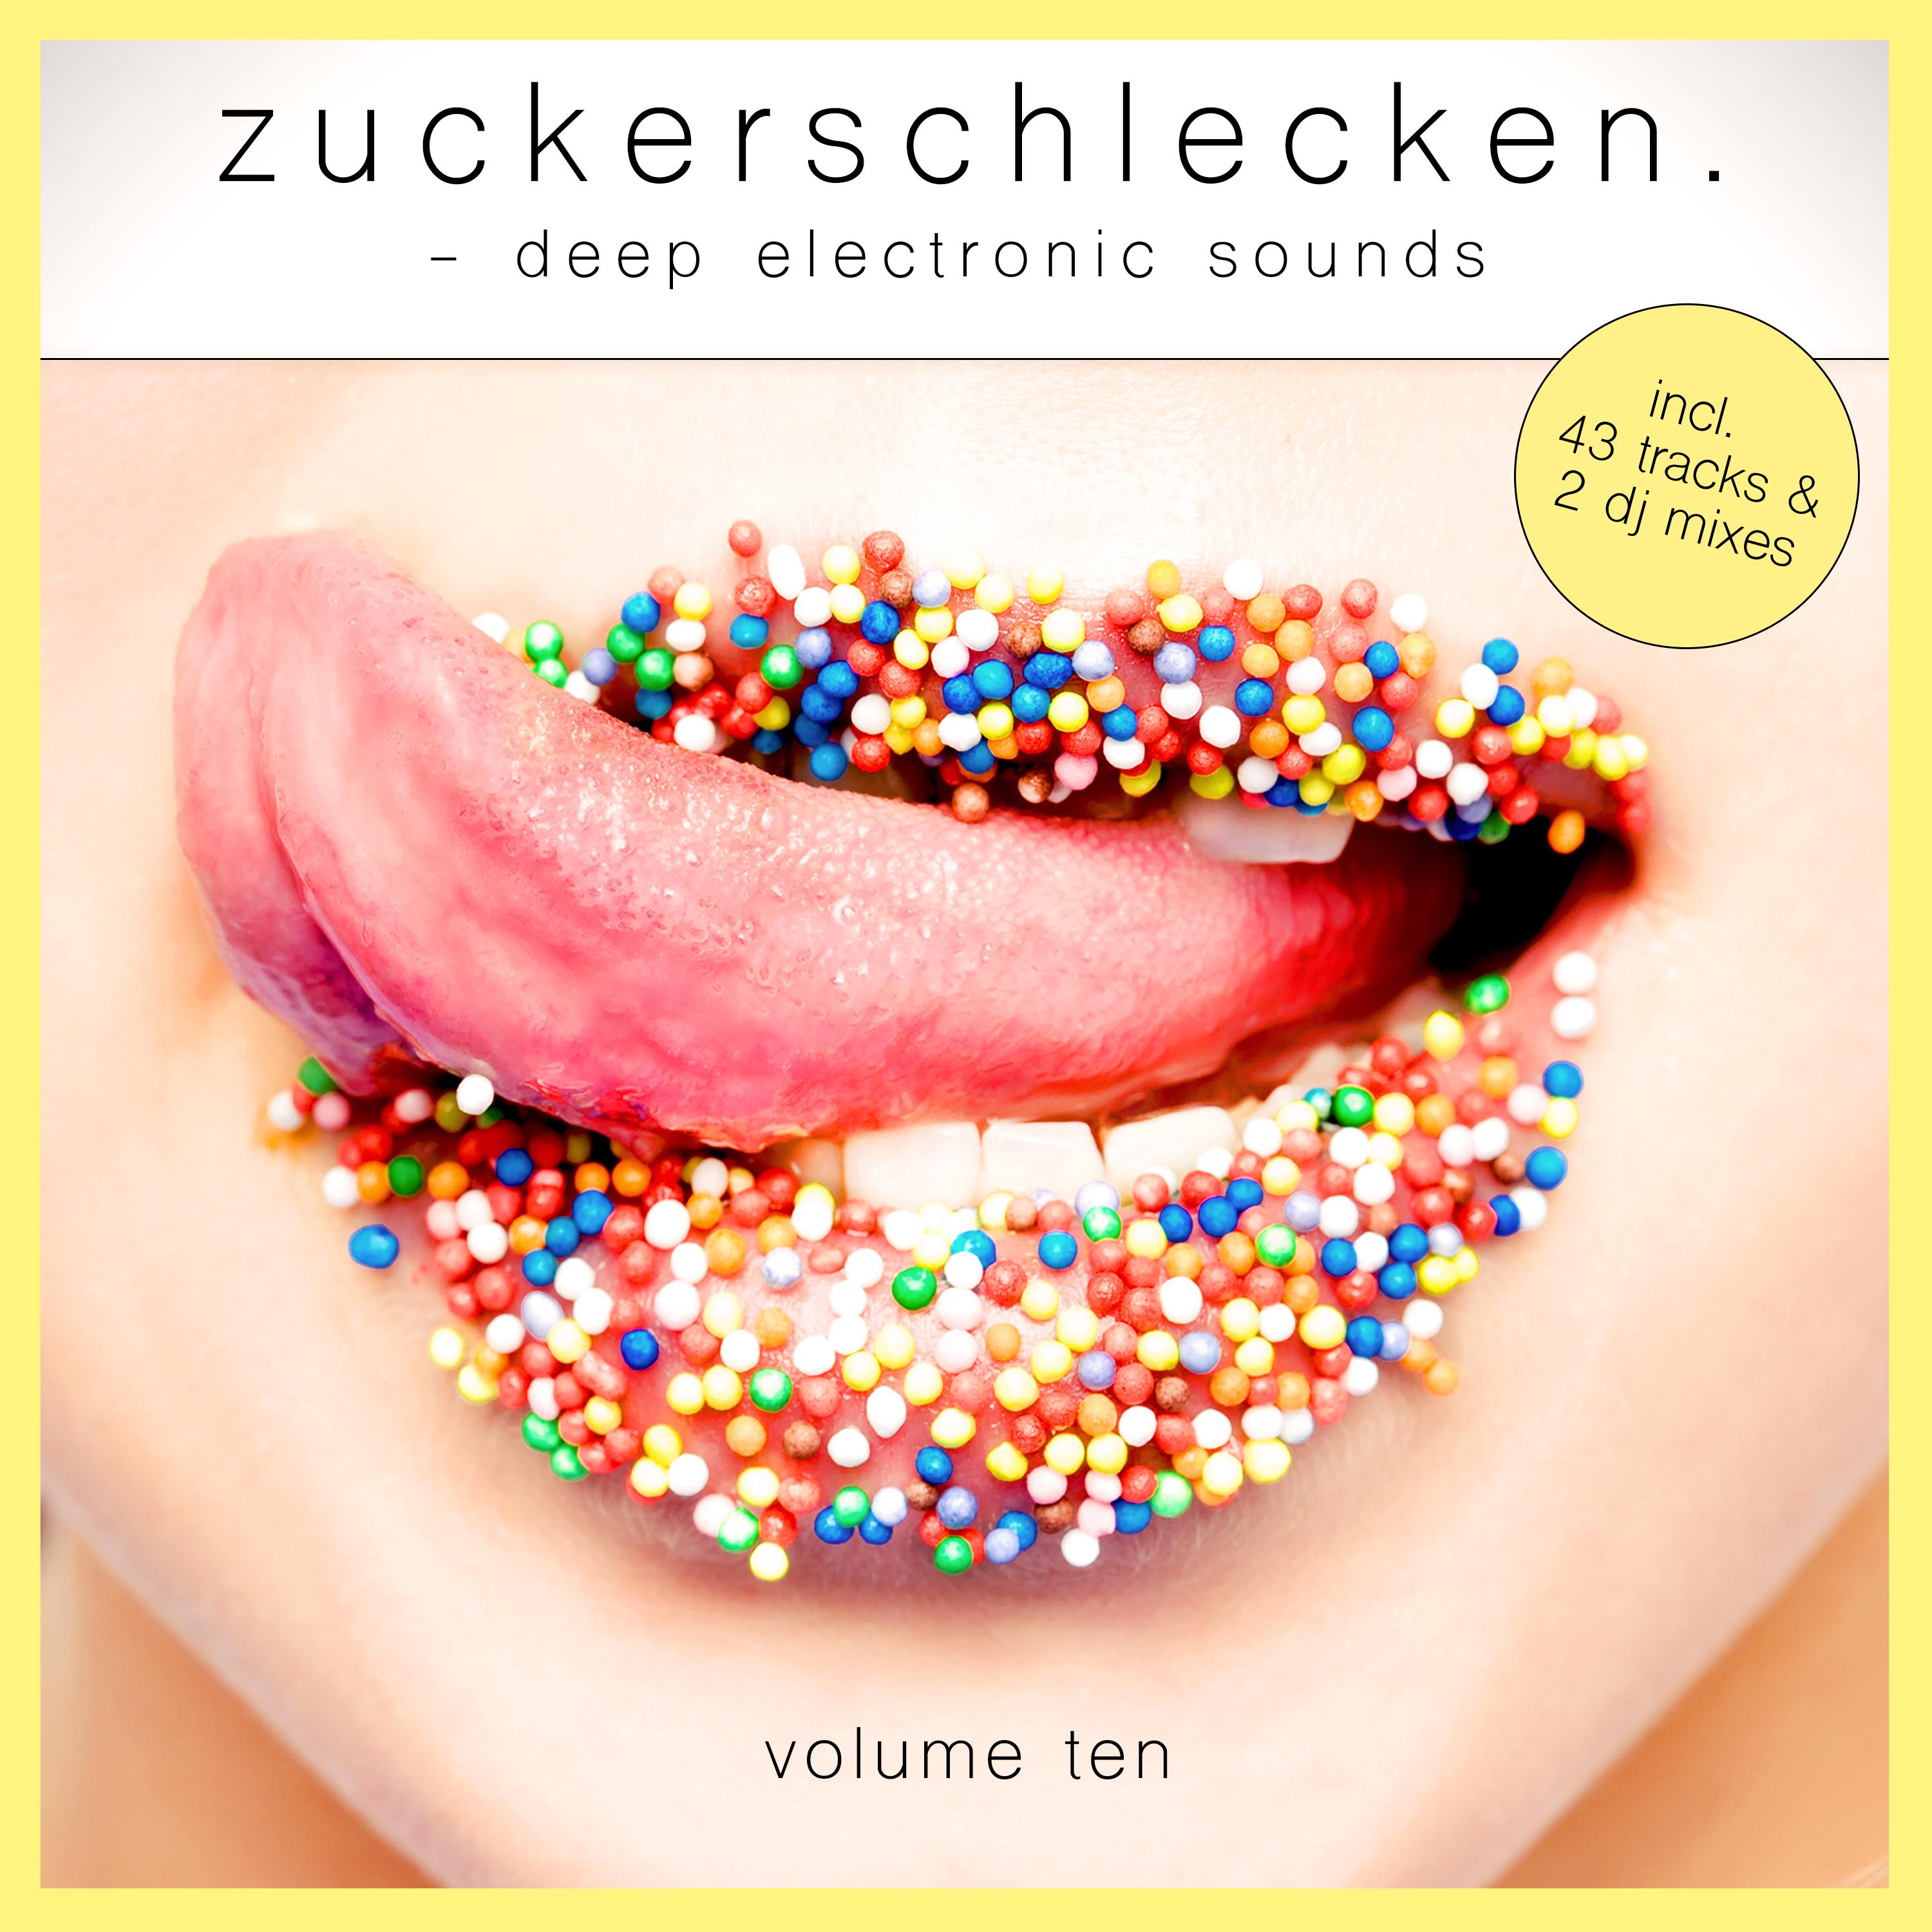 Zuckerschlecken, Vol. 10 (Mix 1 - Continuous DJ Mix)